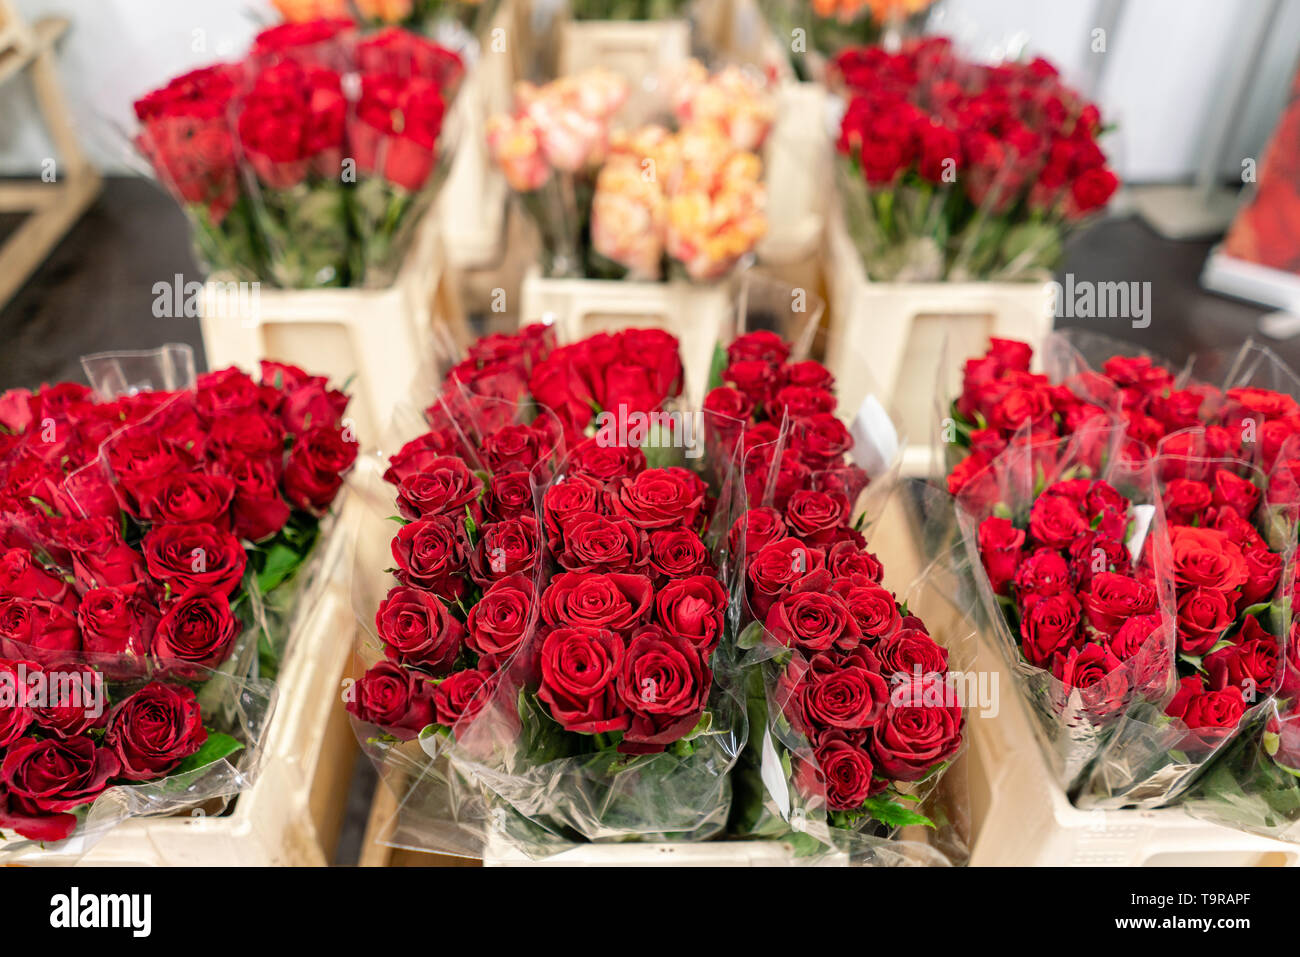 Almacén frigorífico, flores para tiendas de flores. Rosas rojas un recipiente de plástico o cuchara. Tienda Online. Tienda floral y concepto de entrega Fotografía de stock - Alamy